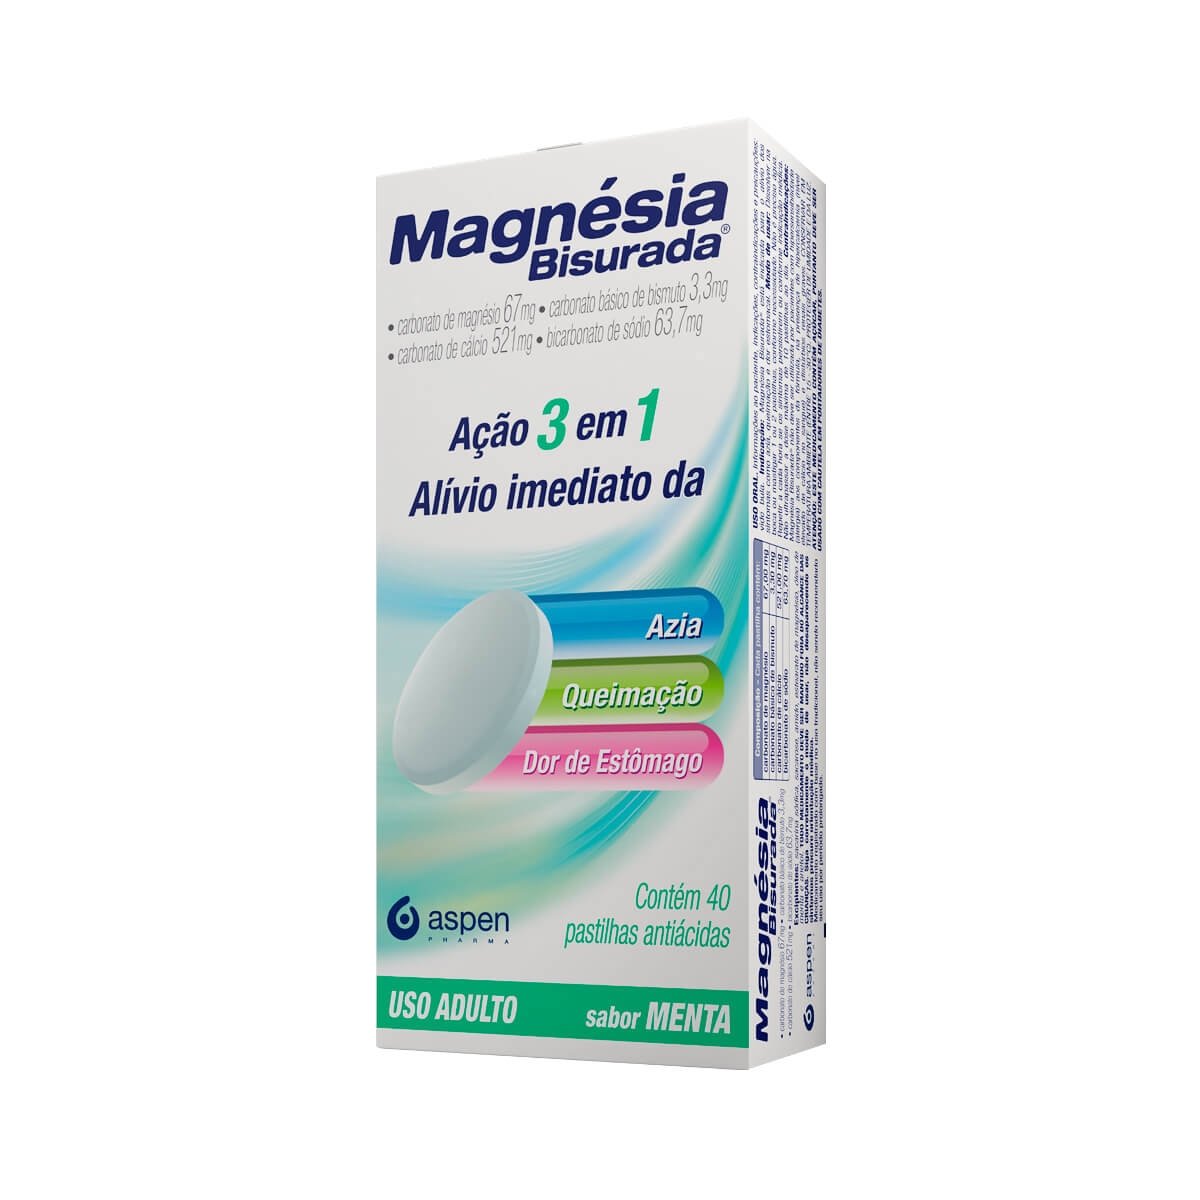 Magnesia Bisurada 40 Past